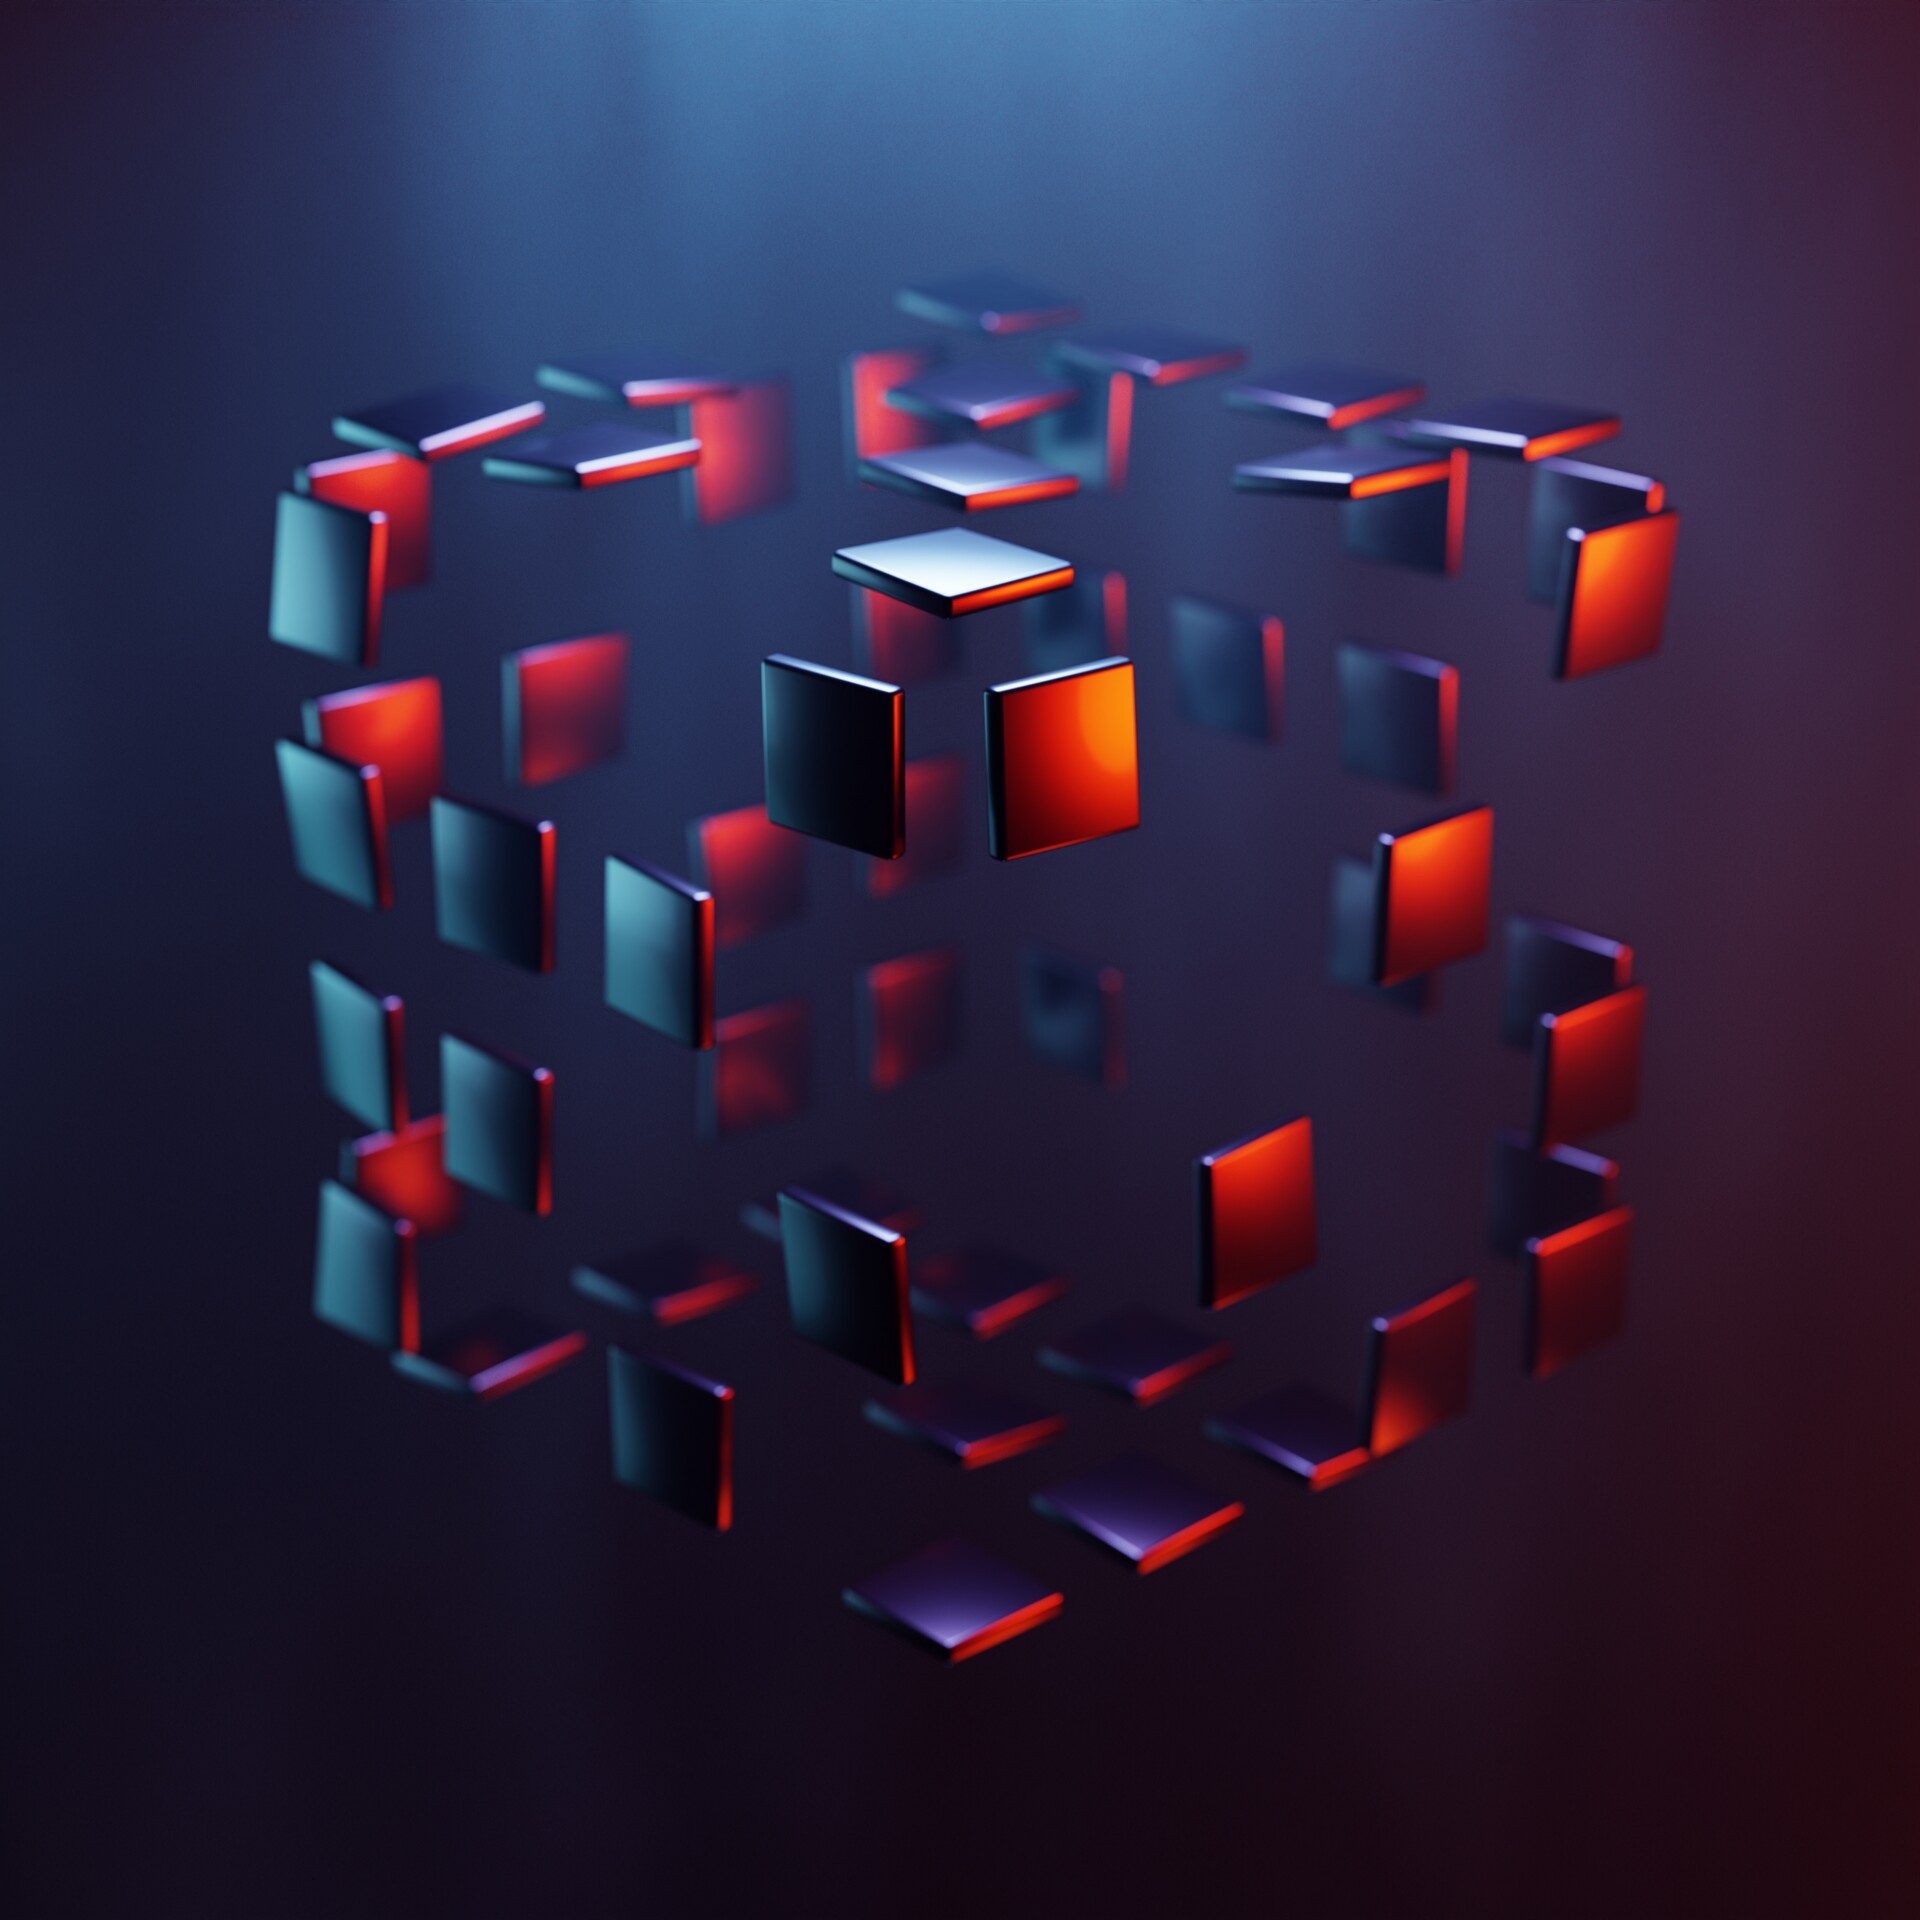 ArtStation - Cube